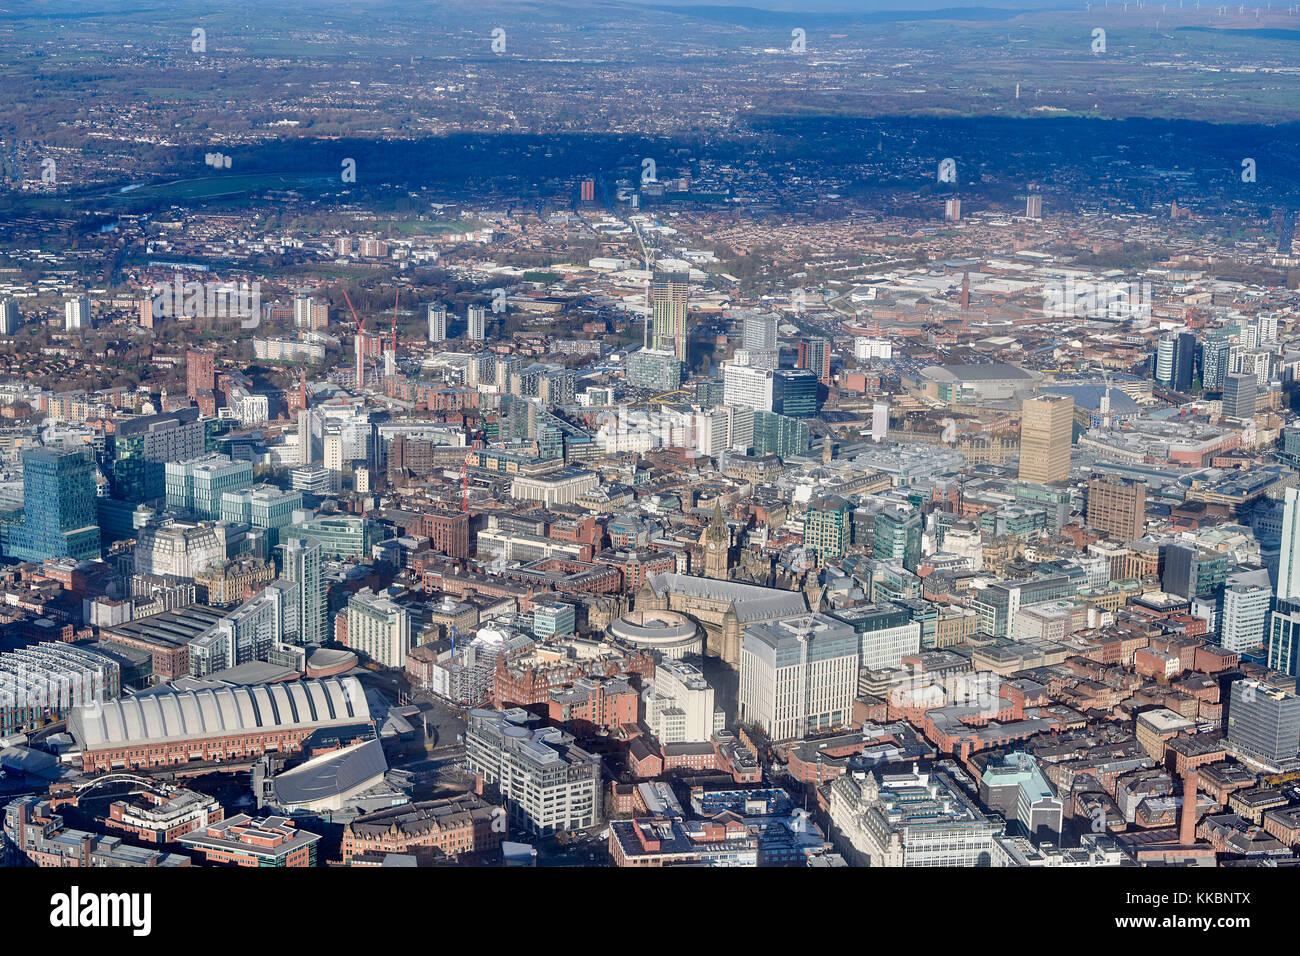 Vue aérienne du centre-ville de Manchester, nord-ouest de l'Angleterre, Royaume-Uni Banque D'Images